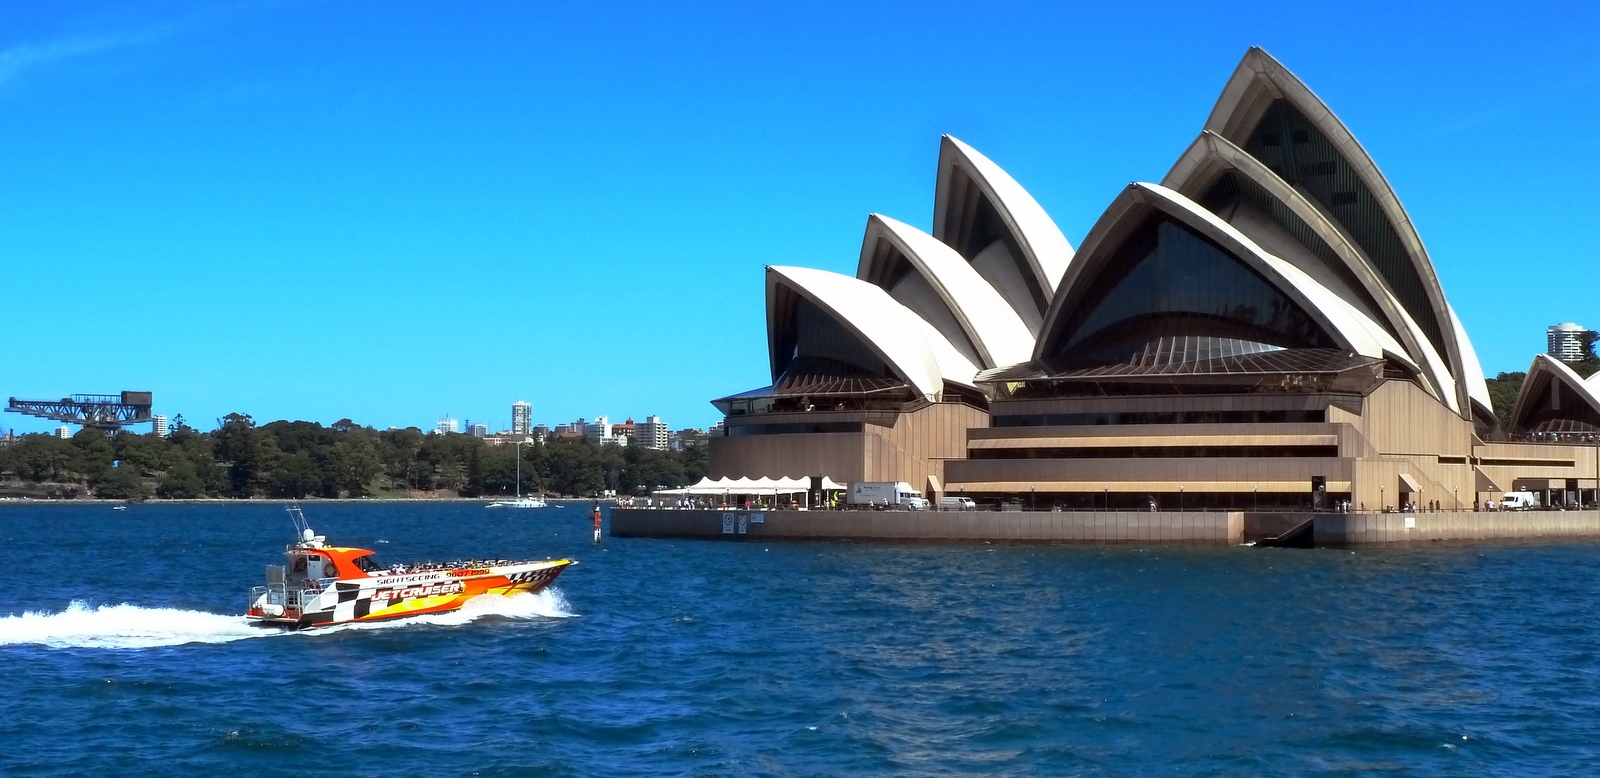 Australia: Sydney Opera House and Bridge : Flashpacking ...